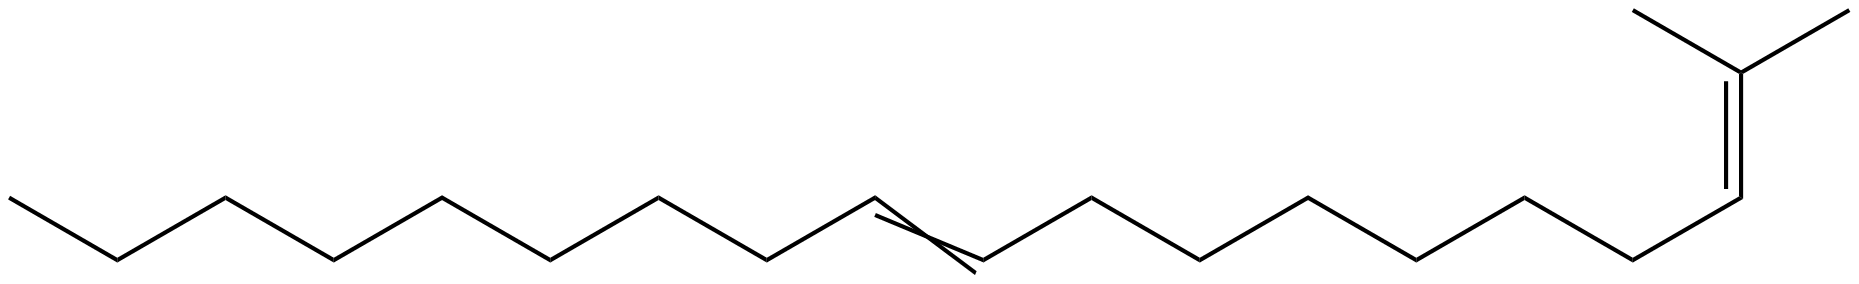 Image of 2-methyl-2,10-nonadecadiene